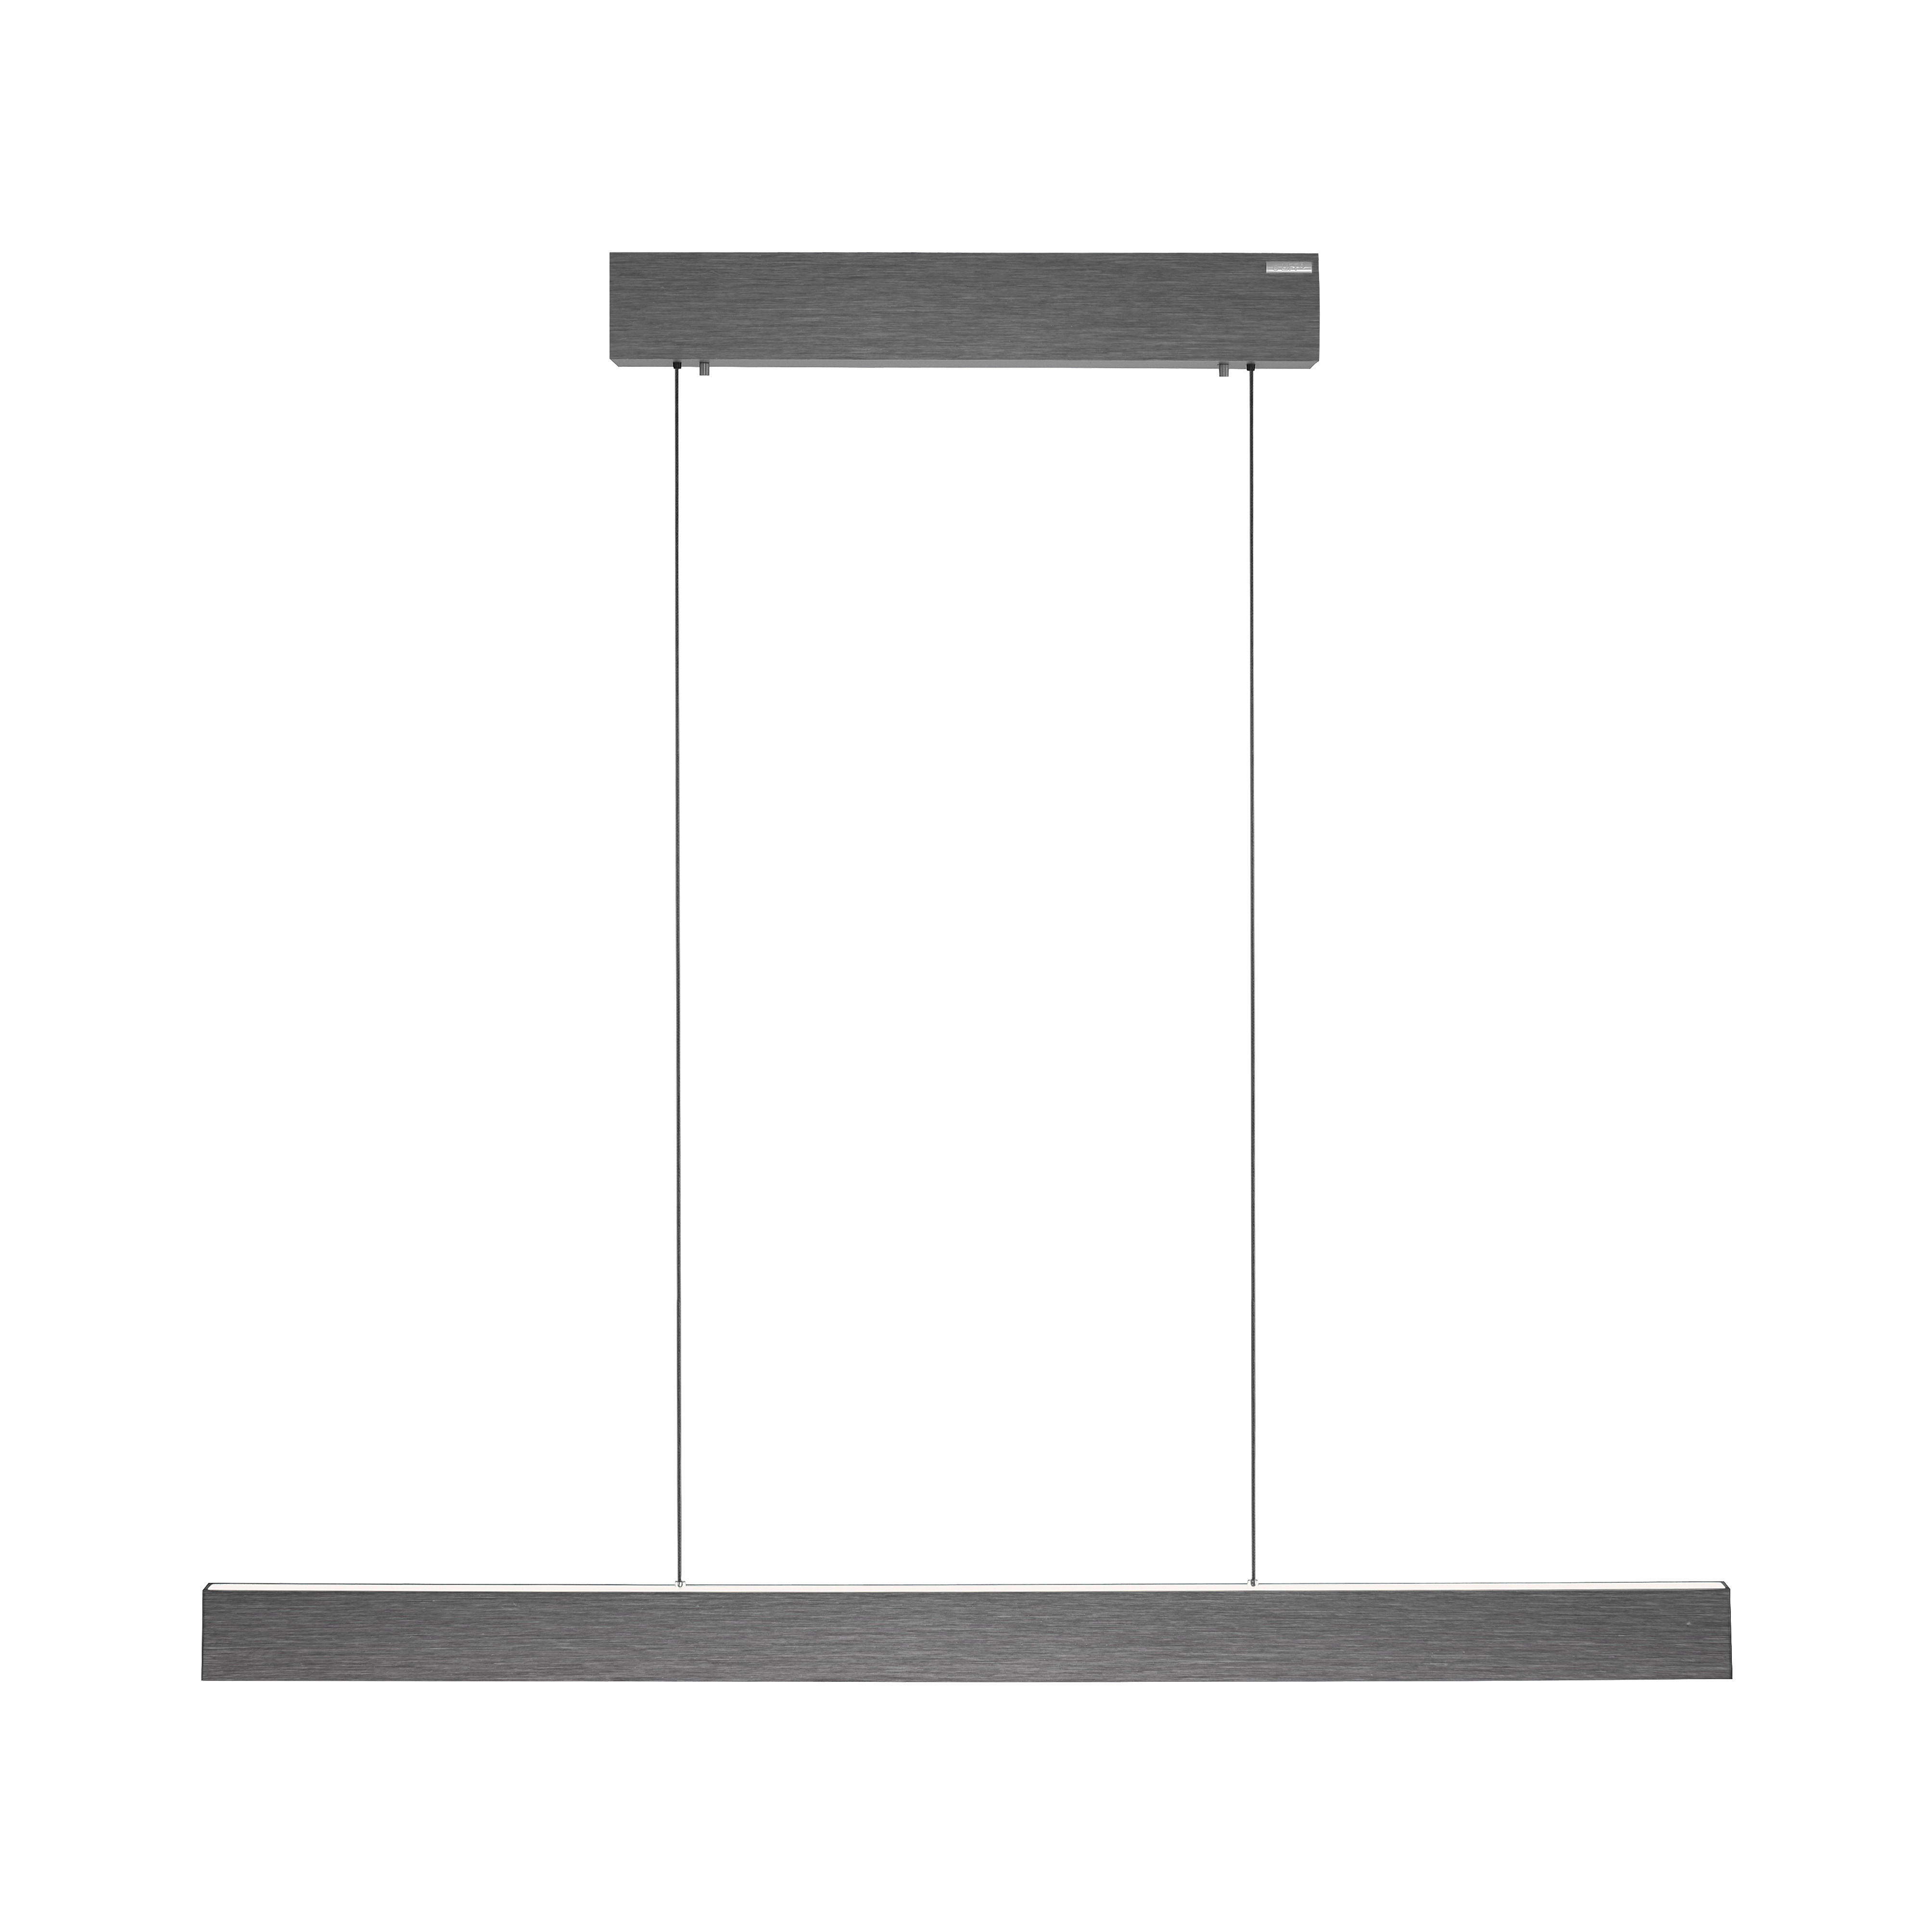 LED-PENDELLEUCHTE  - Grau, Design, Kunststoff/Metall (120/8,2/240cm) - Paul Neuhaus